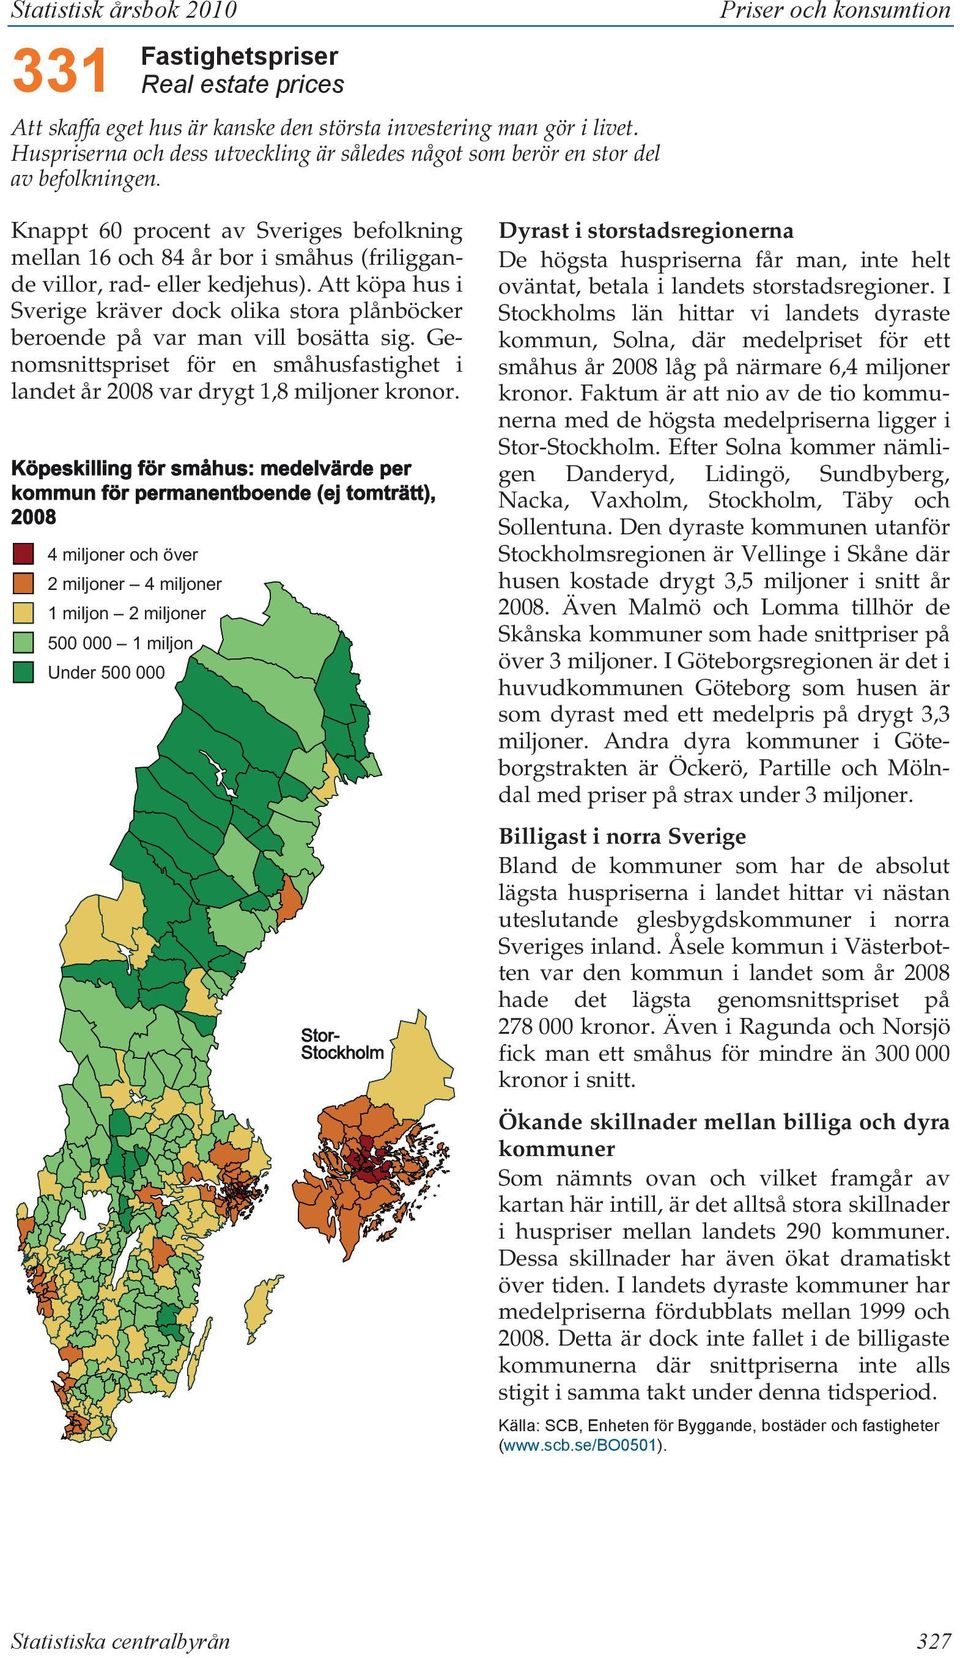 kedjehus). Att köpa hus i Sverige kräver dock olika stora plånböcker beroende på var man vill bosätta sig. Genomsnittspriset för en småhusfastighet i landet år 2008 var drygt 1,8 miljoner kronor.